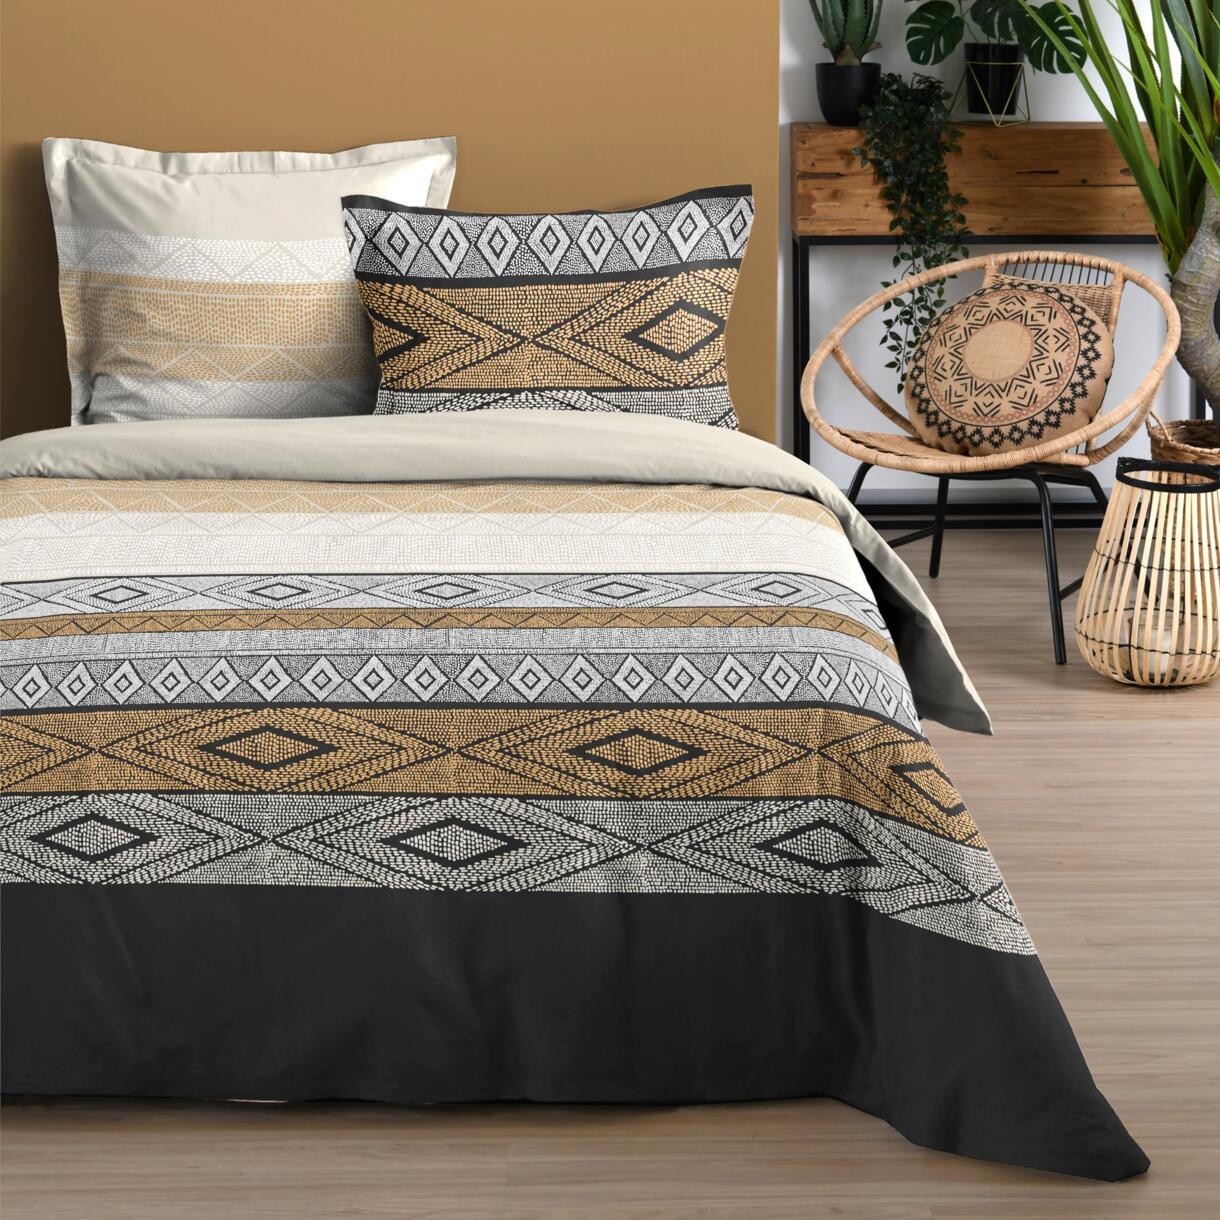 Bettlaken-Set aus Baumwolle 4-teilig (Bett 140 cm) Ethnograf Schwarz 1